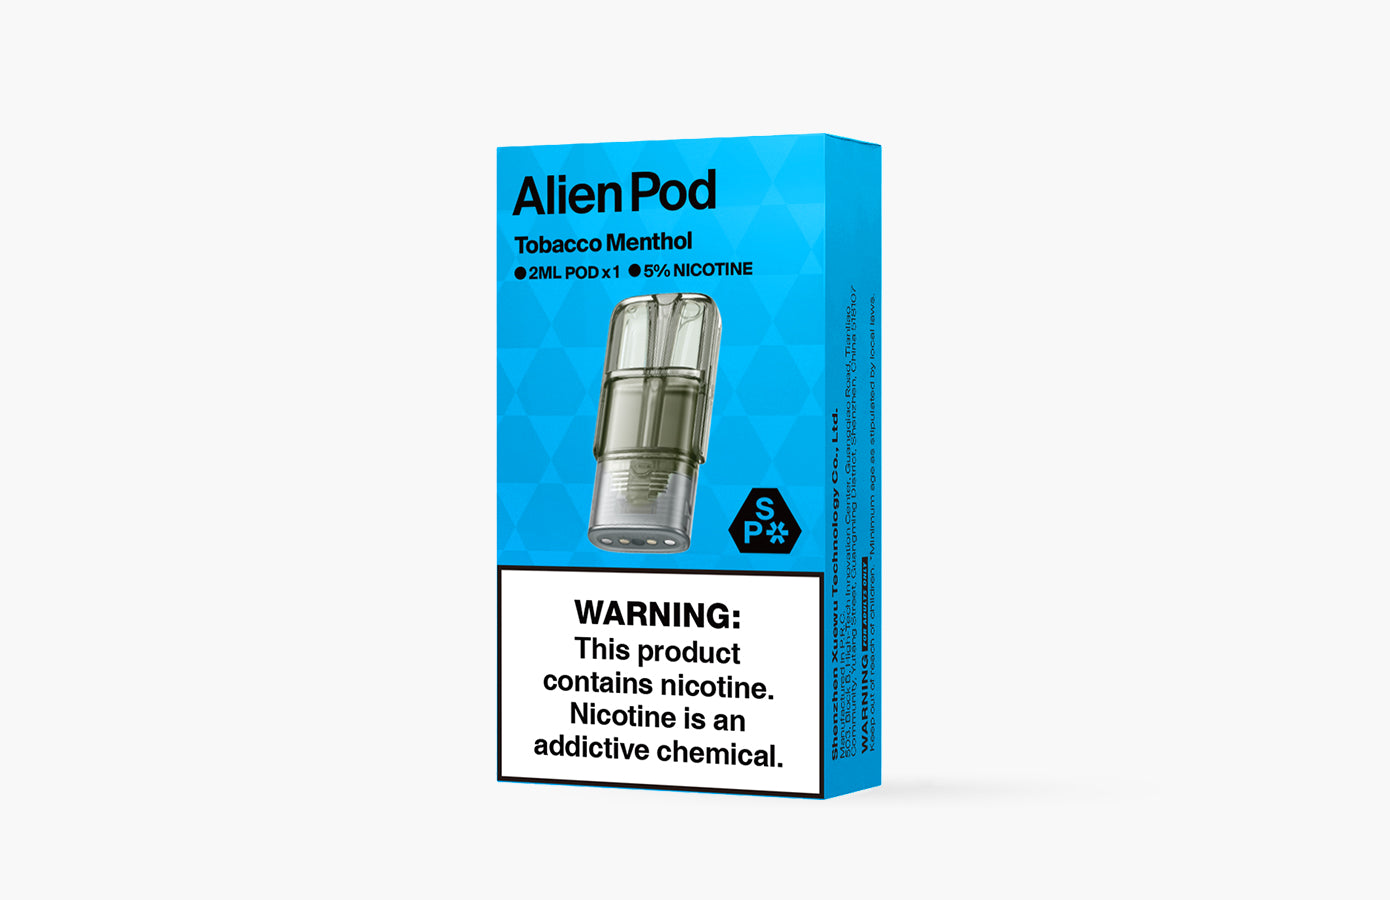 Alien Pods